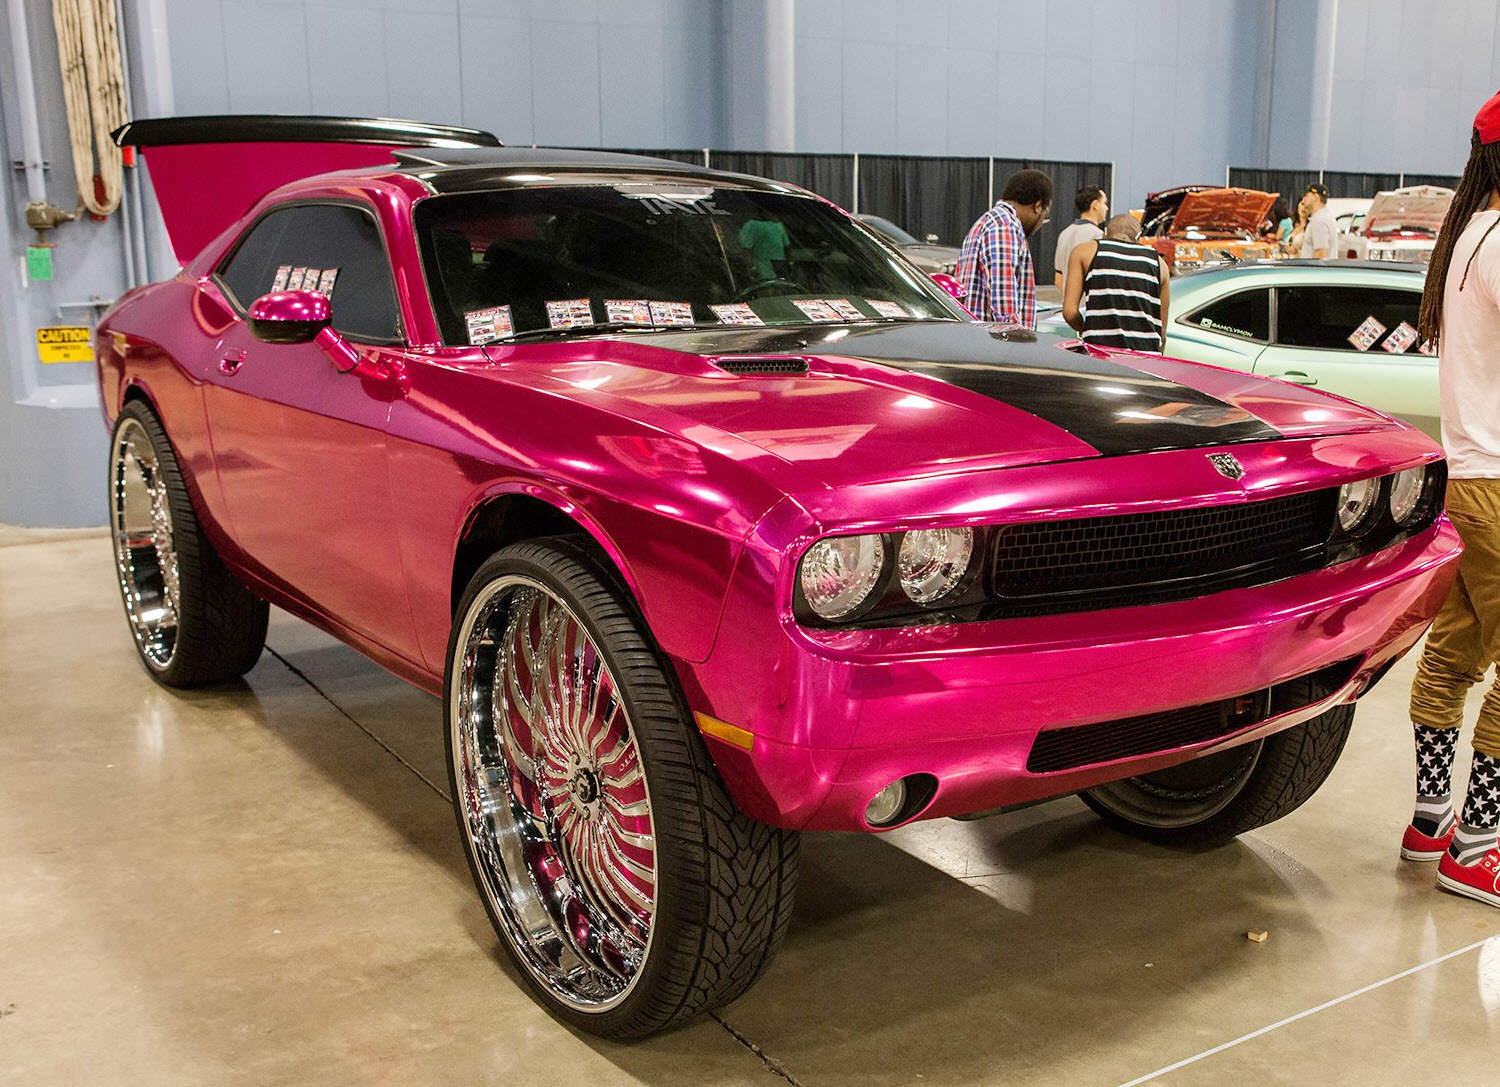 miami-car-show-recap-big-rims-custom-wheels